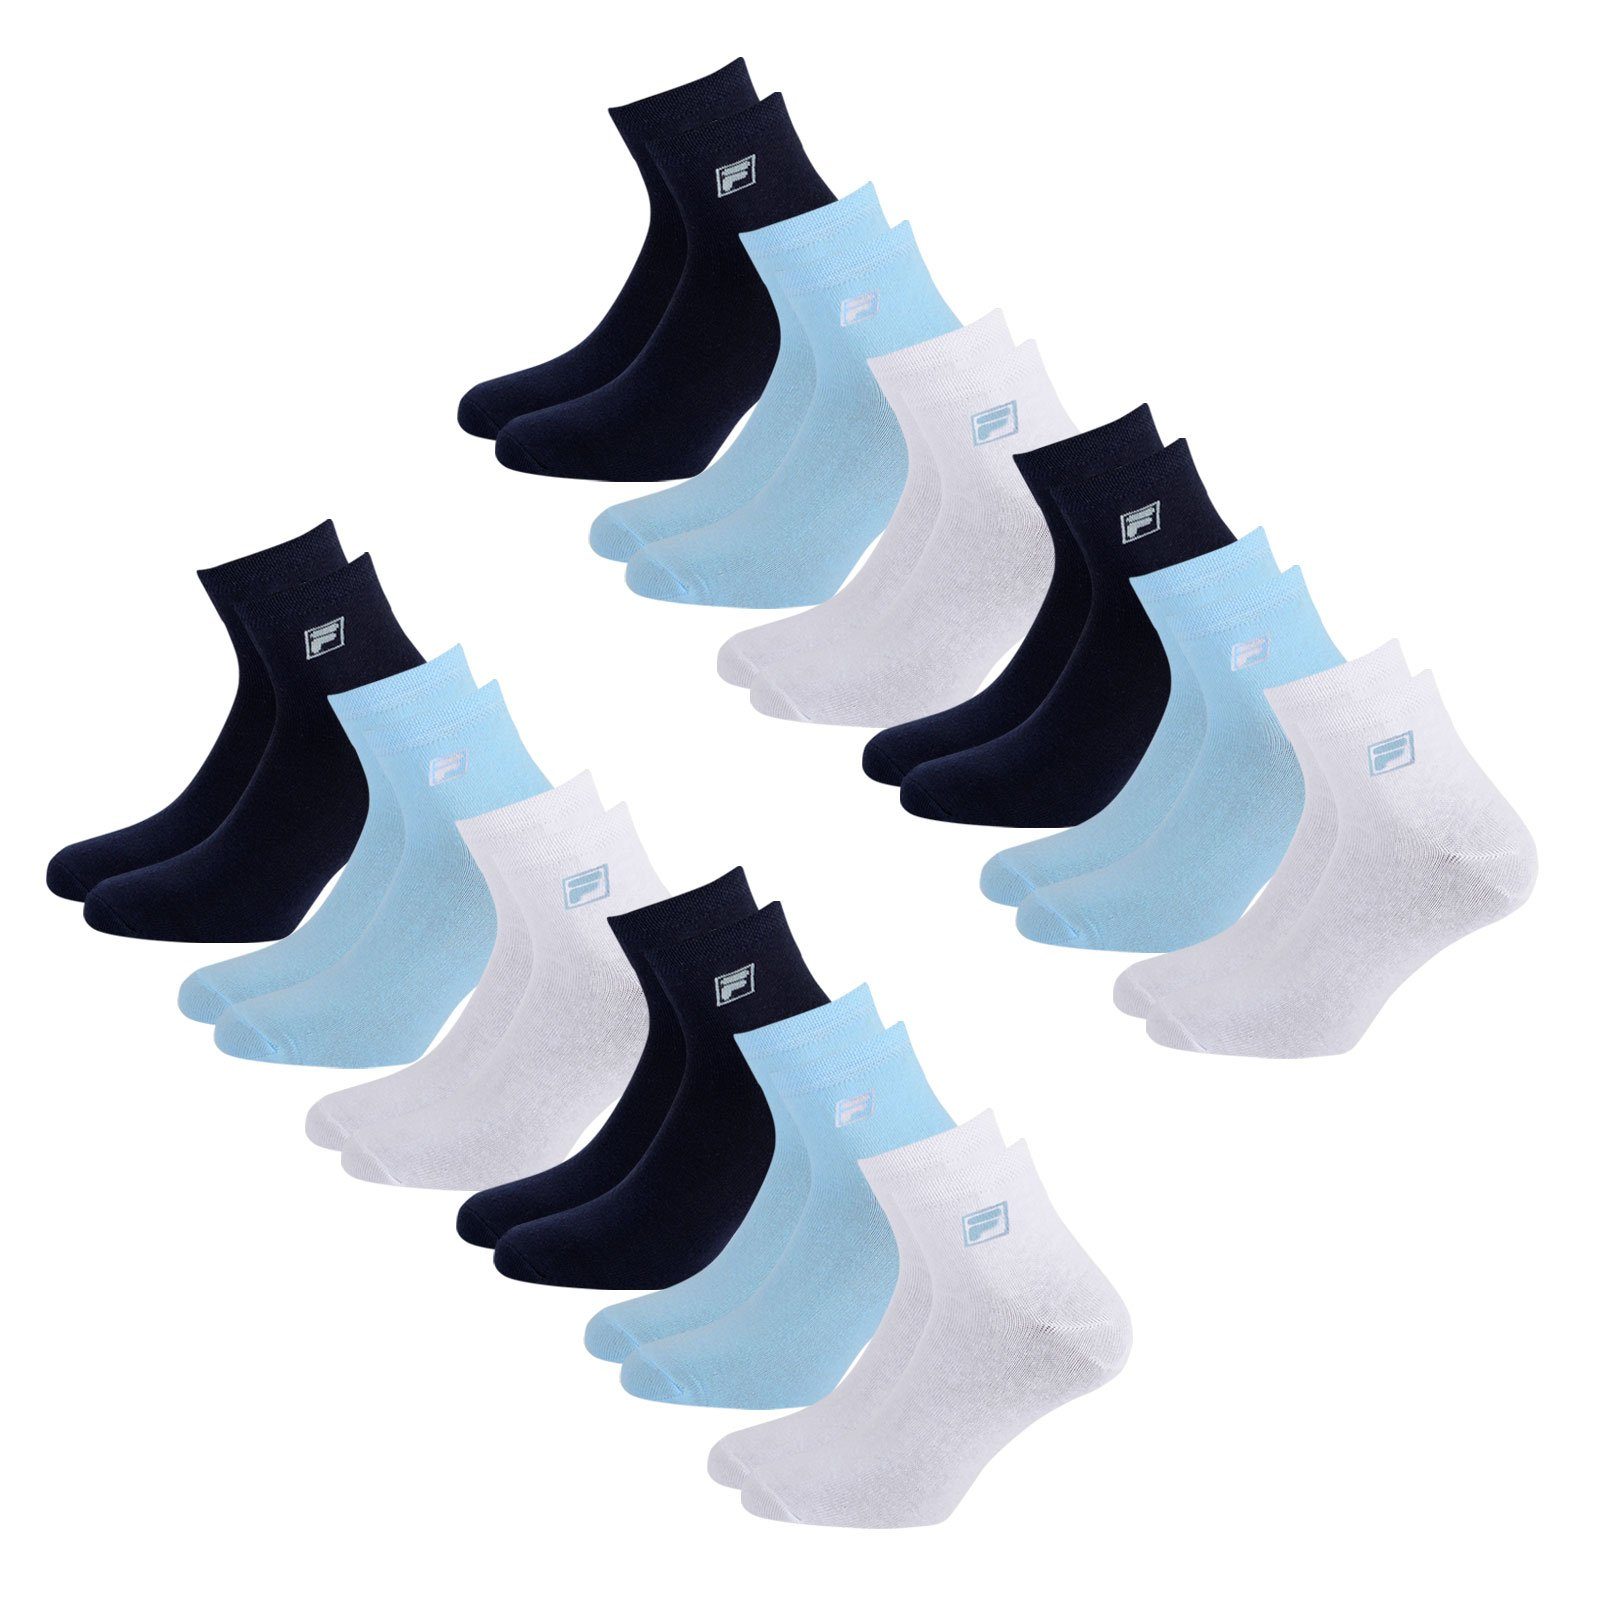 Fila Sportsocken Quarter Socken (12-Paar) mit elastischem Piquebund 821 navy / white / light blue